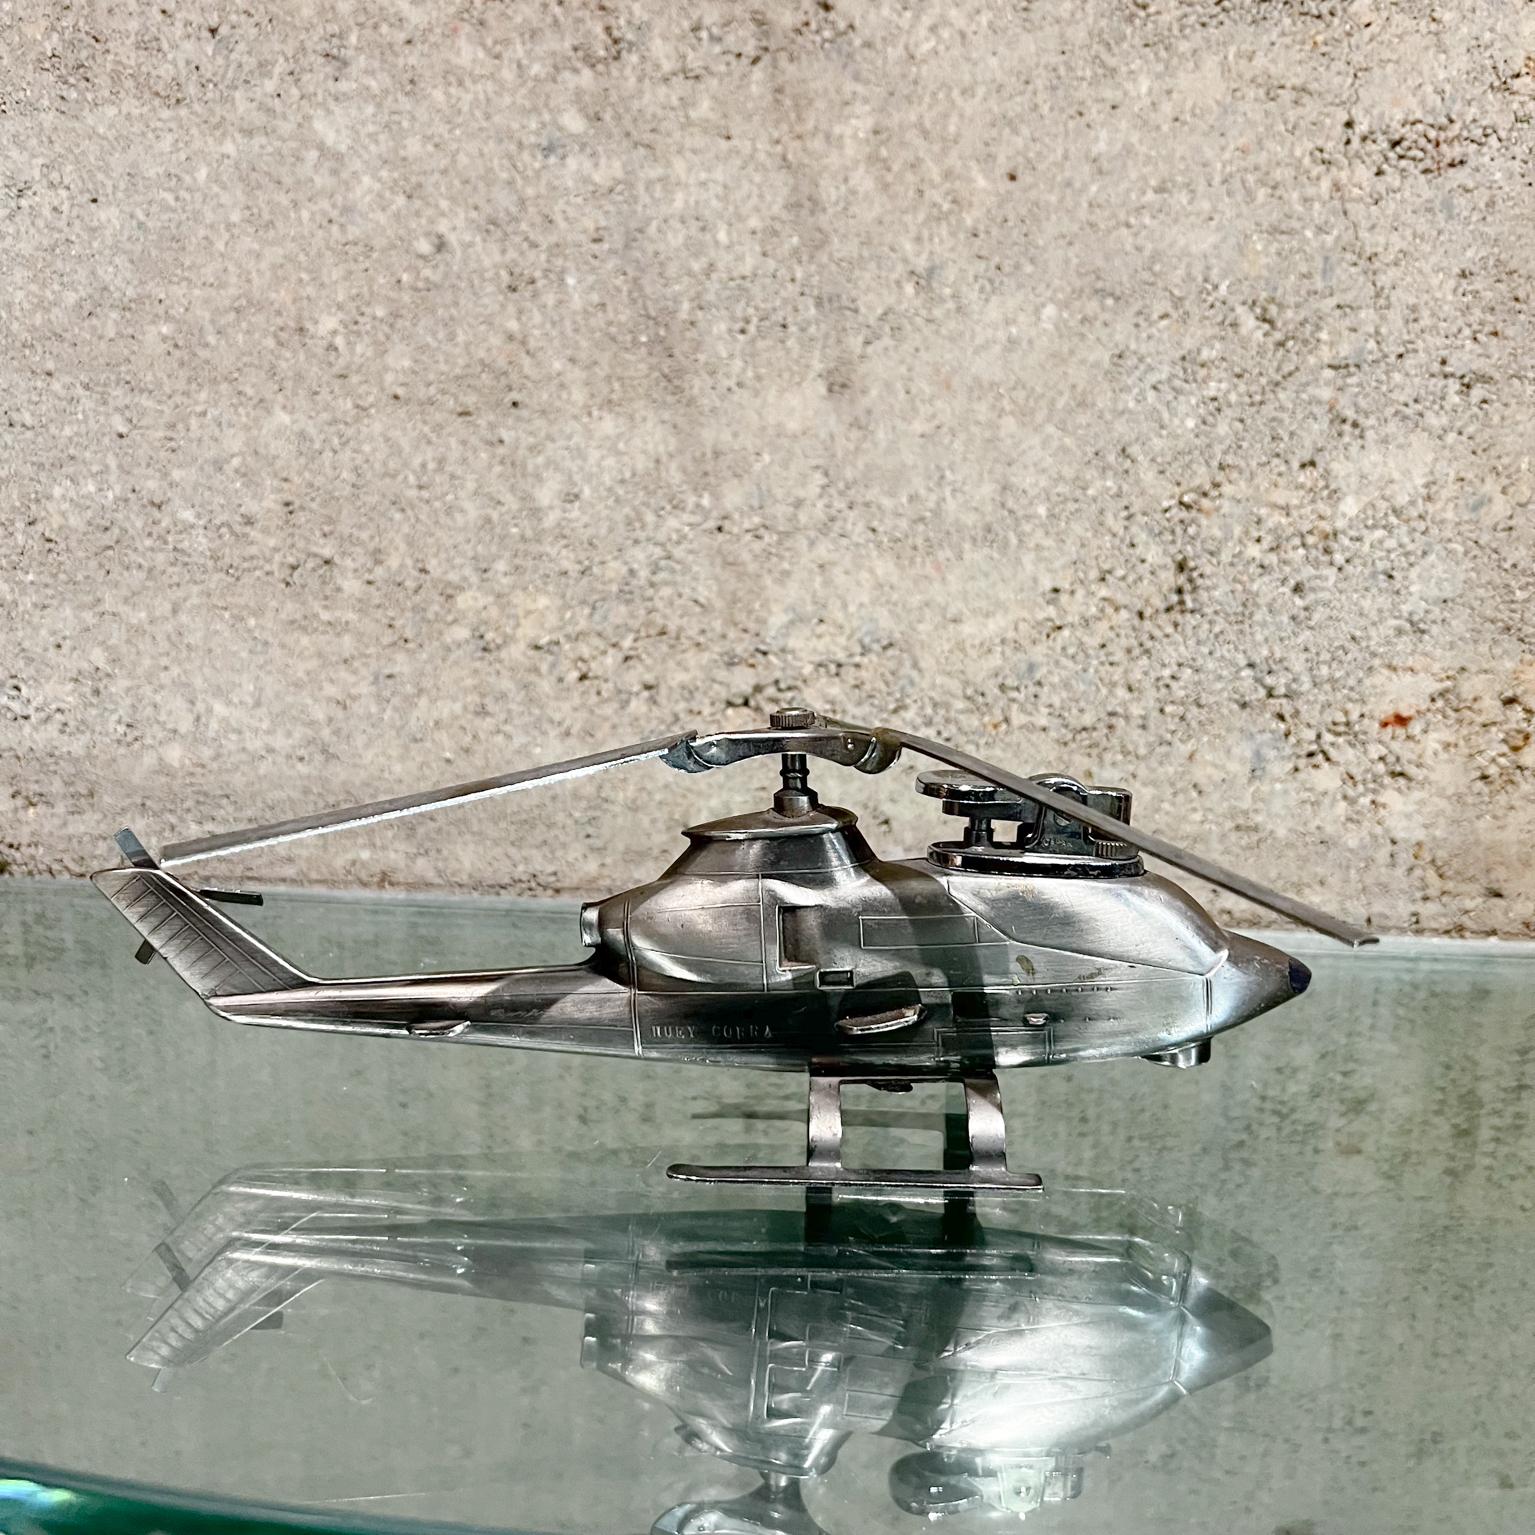 1980 VINTAGE TABLE LIGHTTER Chrome Plated Steel Beautiful helicopter design.
Le briquet est estampillé Japon.
En forme d'hélicoptère Huey Cobra
3 haut x 7.5w x 9 d
Nécessite un entretien, testé et ne fonctionnant pas au moment du test.
État